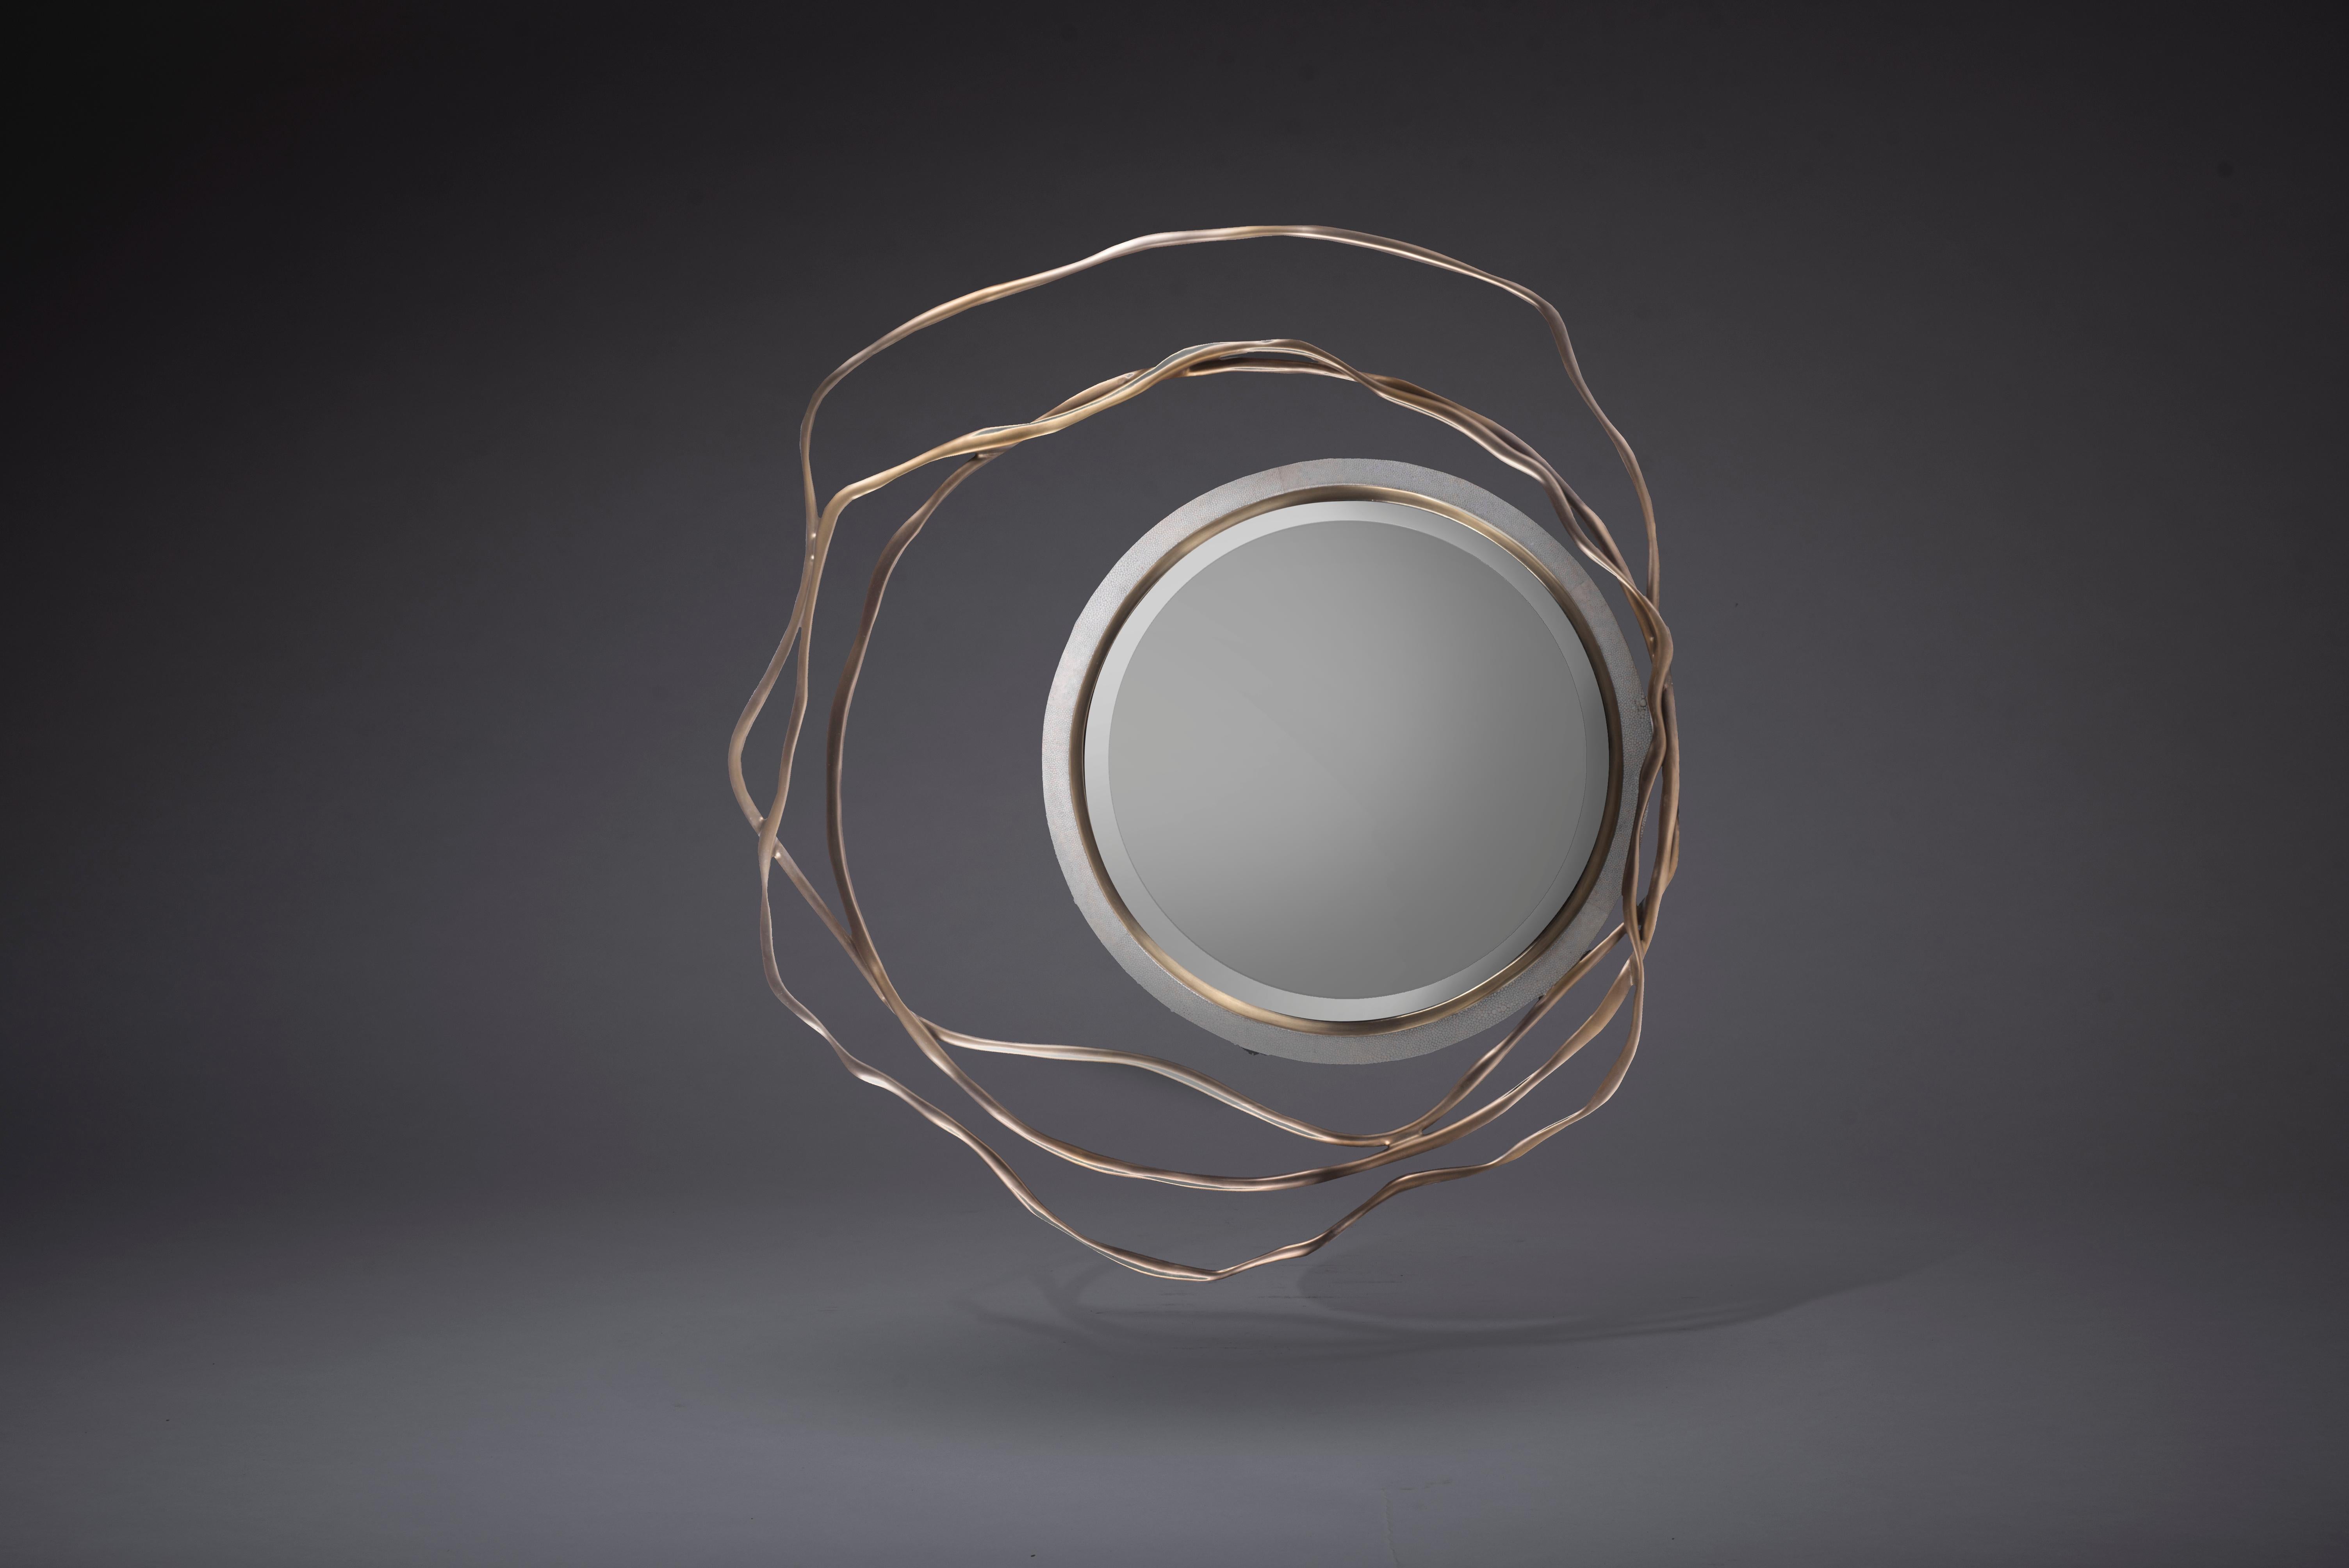 Der Dargelos-Spiegel ist mit seinen ätherisch inspirierten Wurzeln ein Statement. Die Verflechtung der gedrehten Bronze-Patina-Messingdrähte mit dem kreisförmigen cremefarbenen Rahmen des Spiegels schafft ein wahrhaft skurriles Gefühl, wobei das